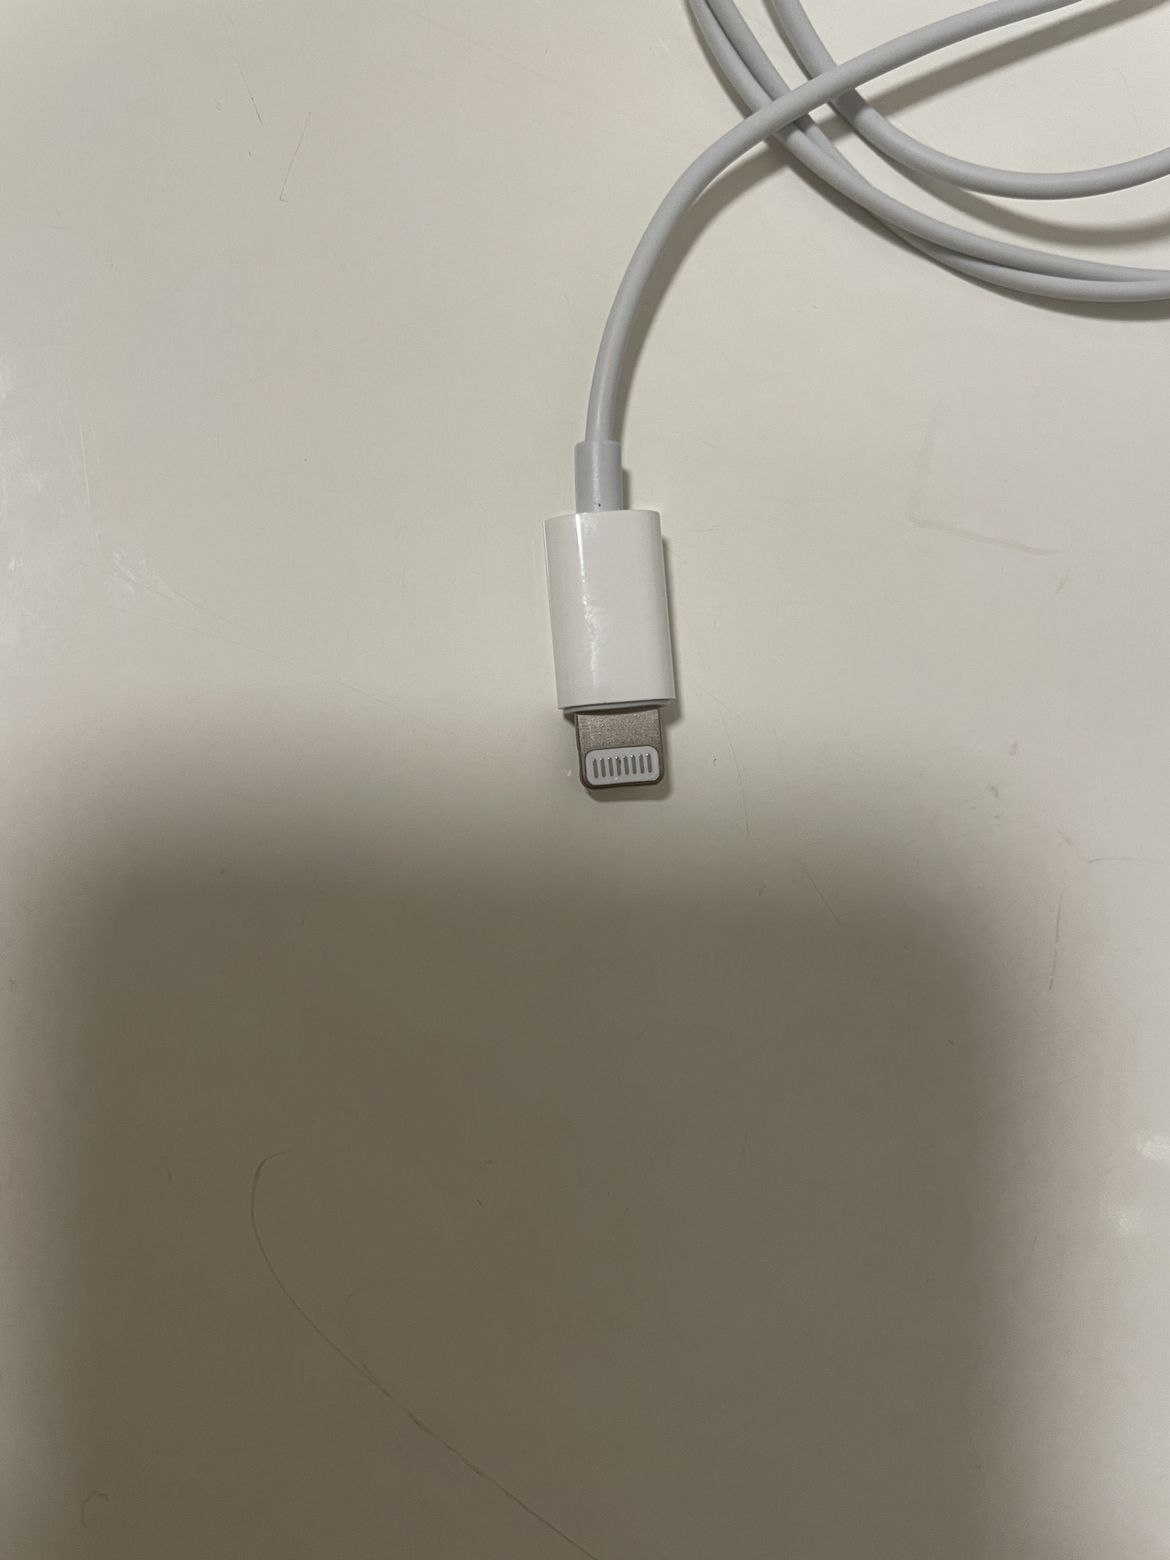 Apple原装 采用Lightning/闪电接头的 EarPods 耳机 iPhone iPad 耳机 有线耳机晒单图